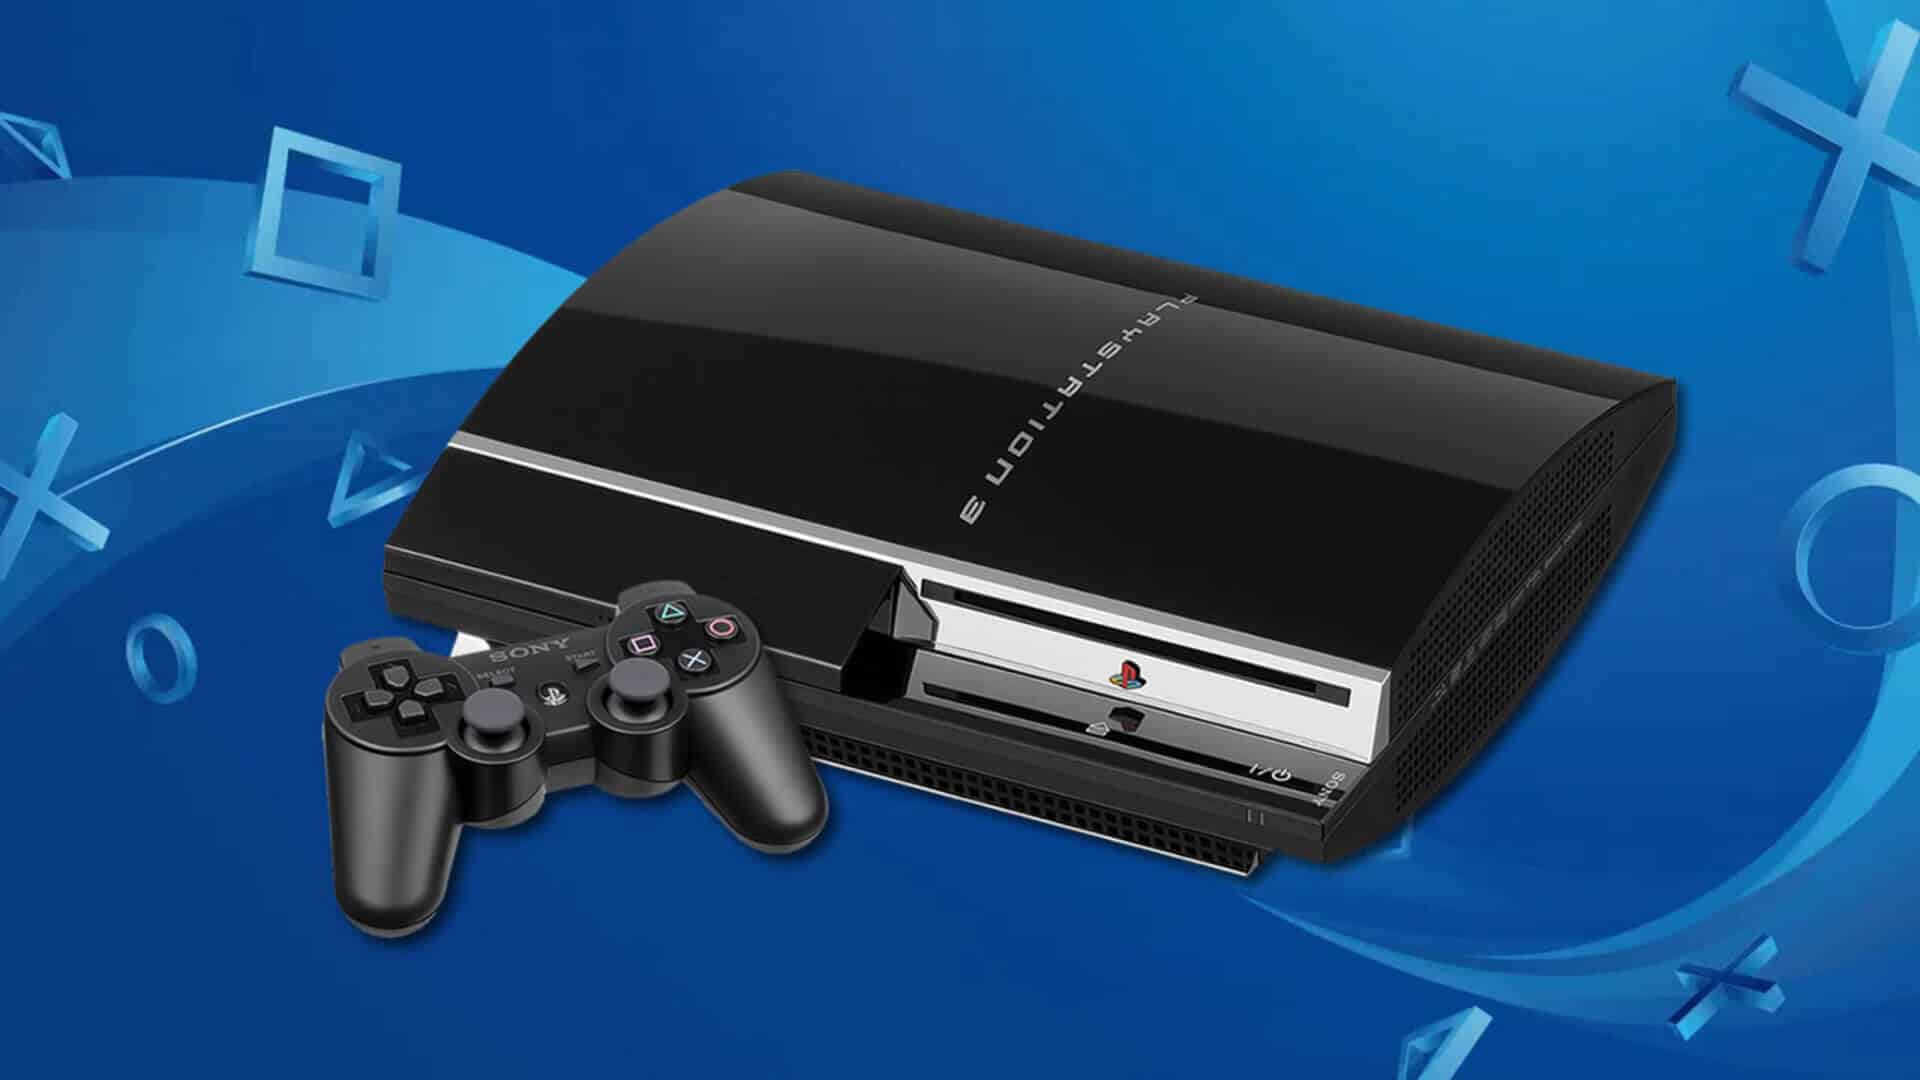 Parece que o PlayStation 3 pode virar um autentico pisa papeis, pois a era deste console está chegando ao fim, junto com ele, o PS Vita e PSP também vão ter os dias contados.